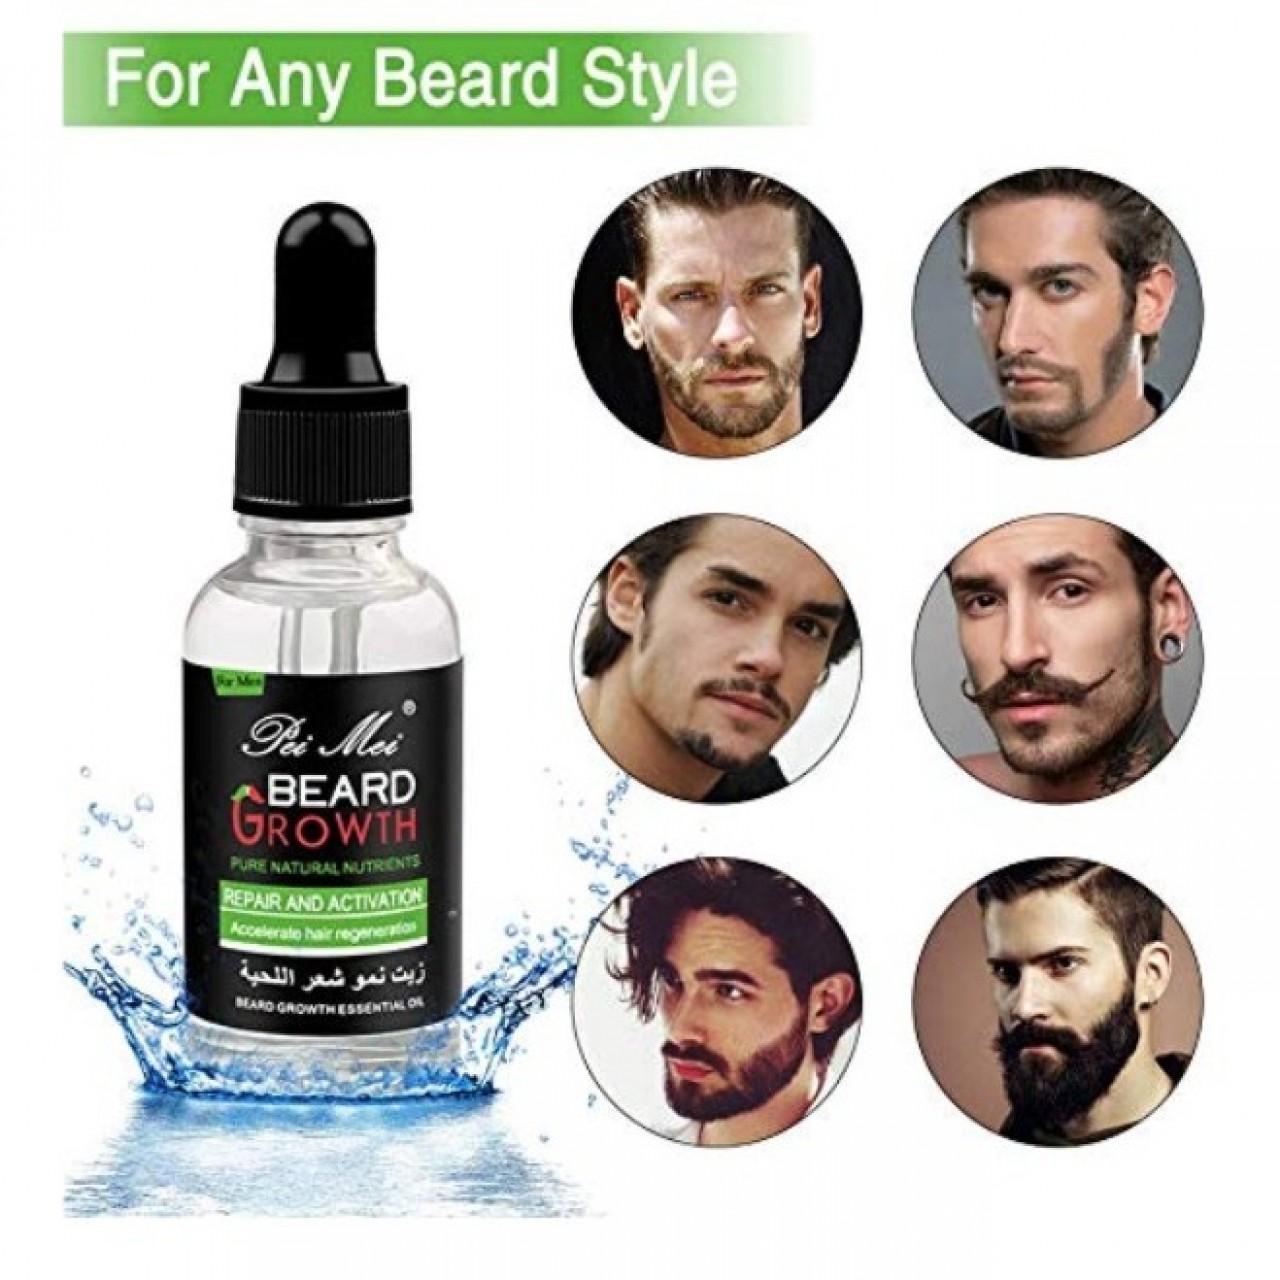 treatment for beard